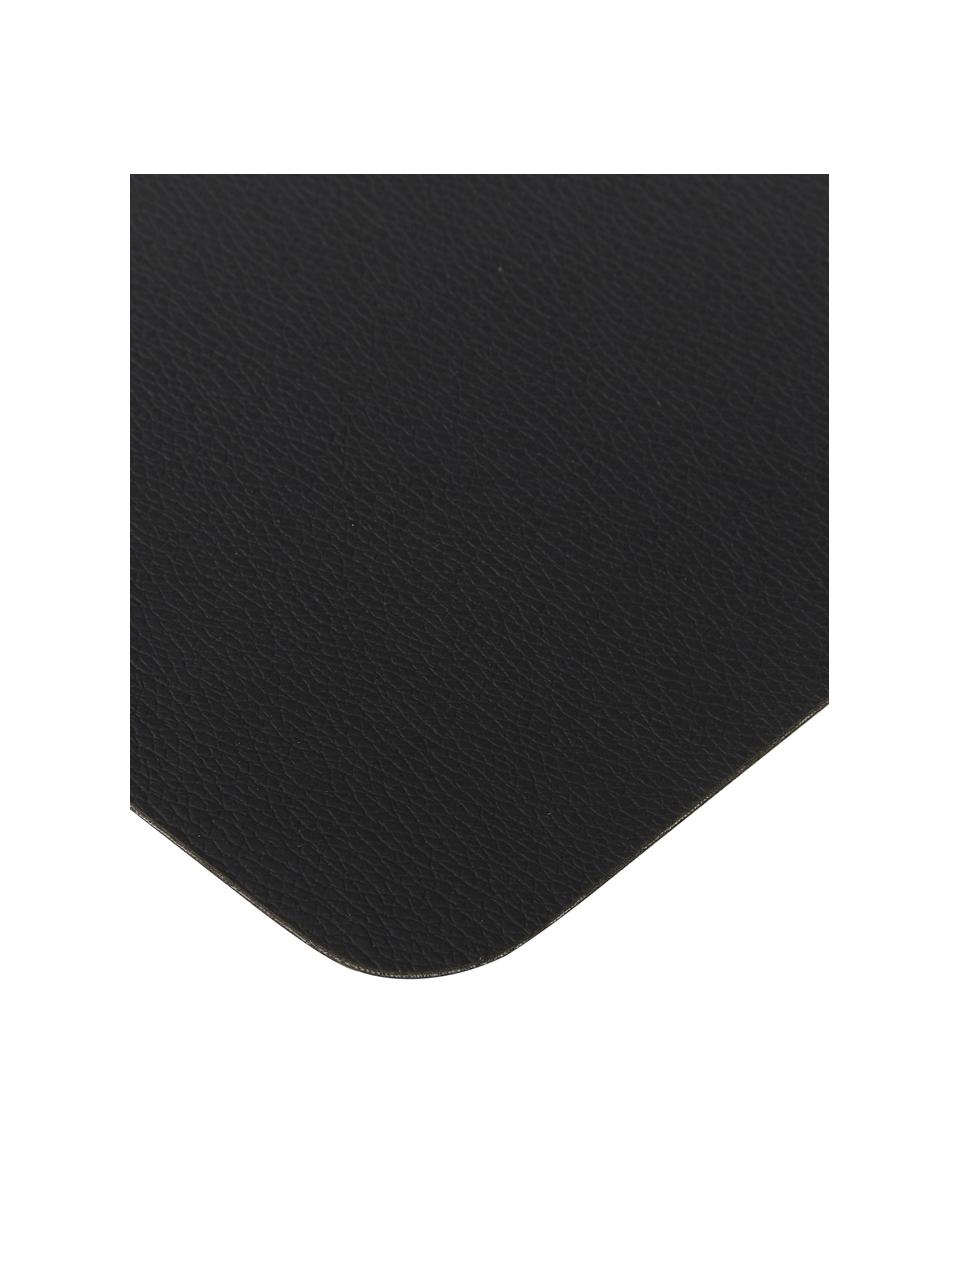 Manteles individuales de cuero sintético Pik, 2 uds., Cuero sintético (PVC), Negro, An 33 x L 46 cm